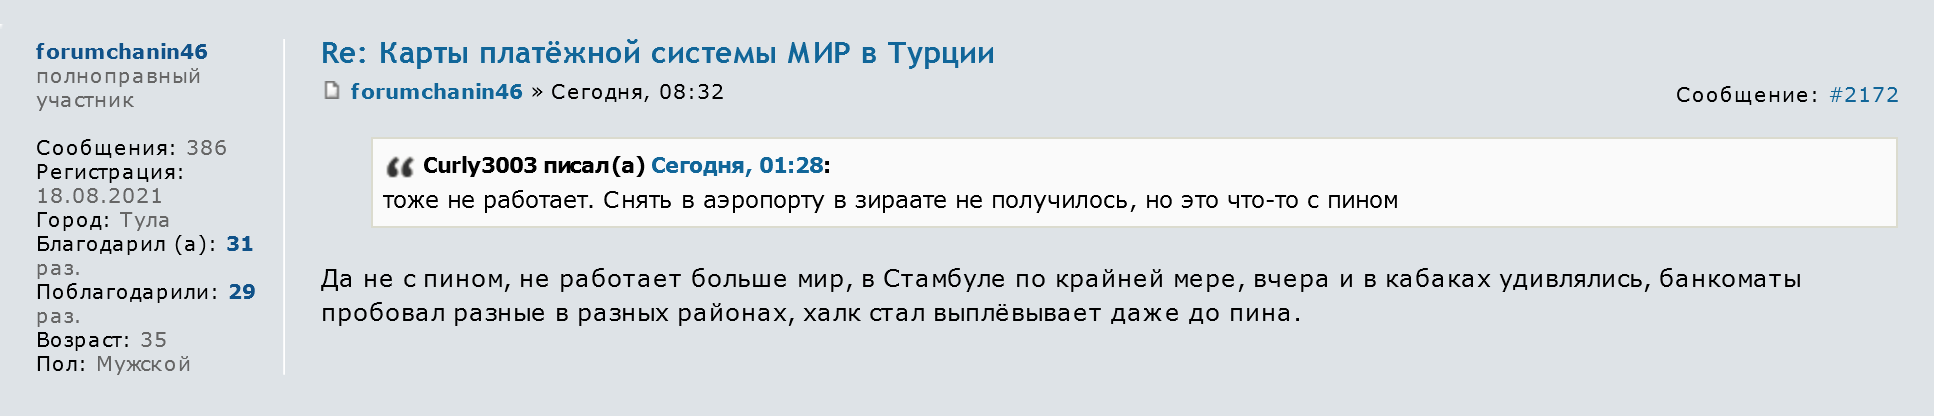 Один из пользователей Форума Винского пишет, что Halkbank стал выплевывать карту до ввода пин⁠-⁠кода. Источник: forum.awd.ru